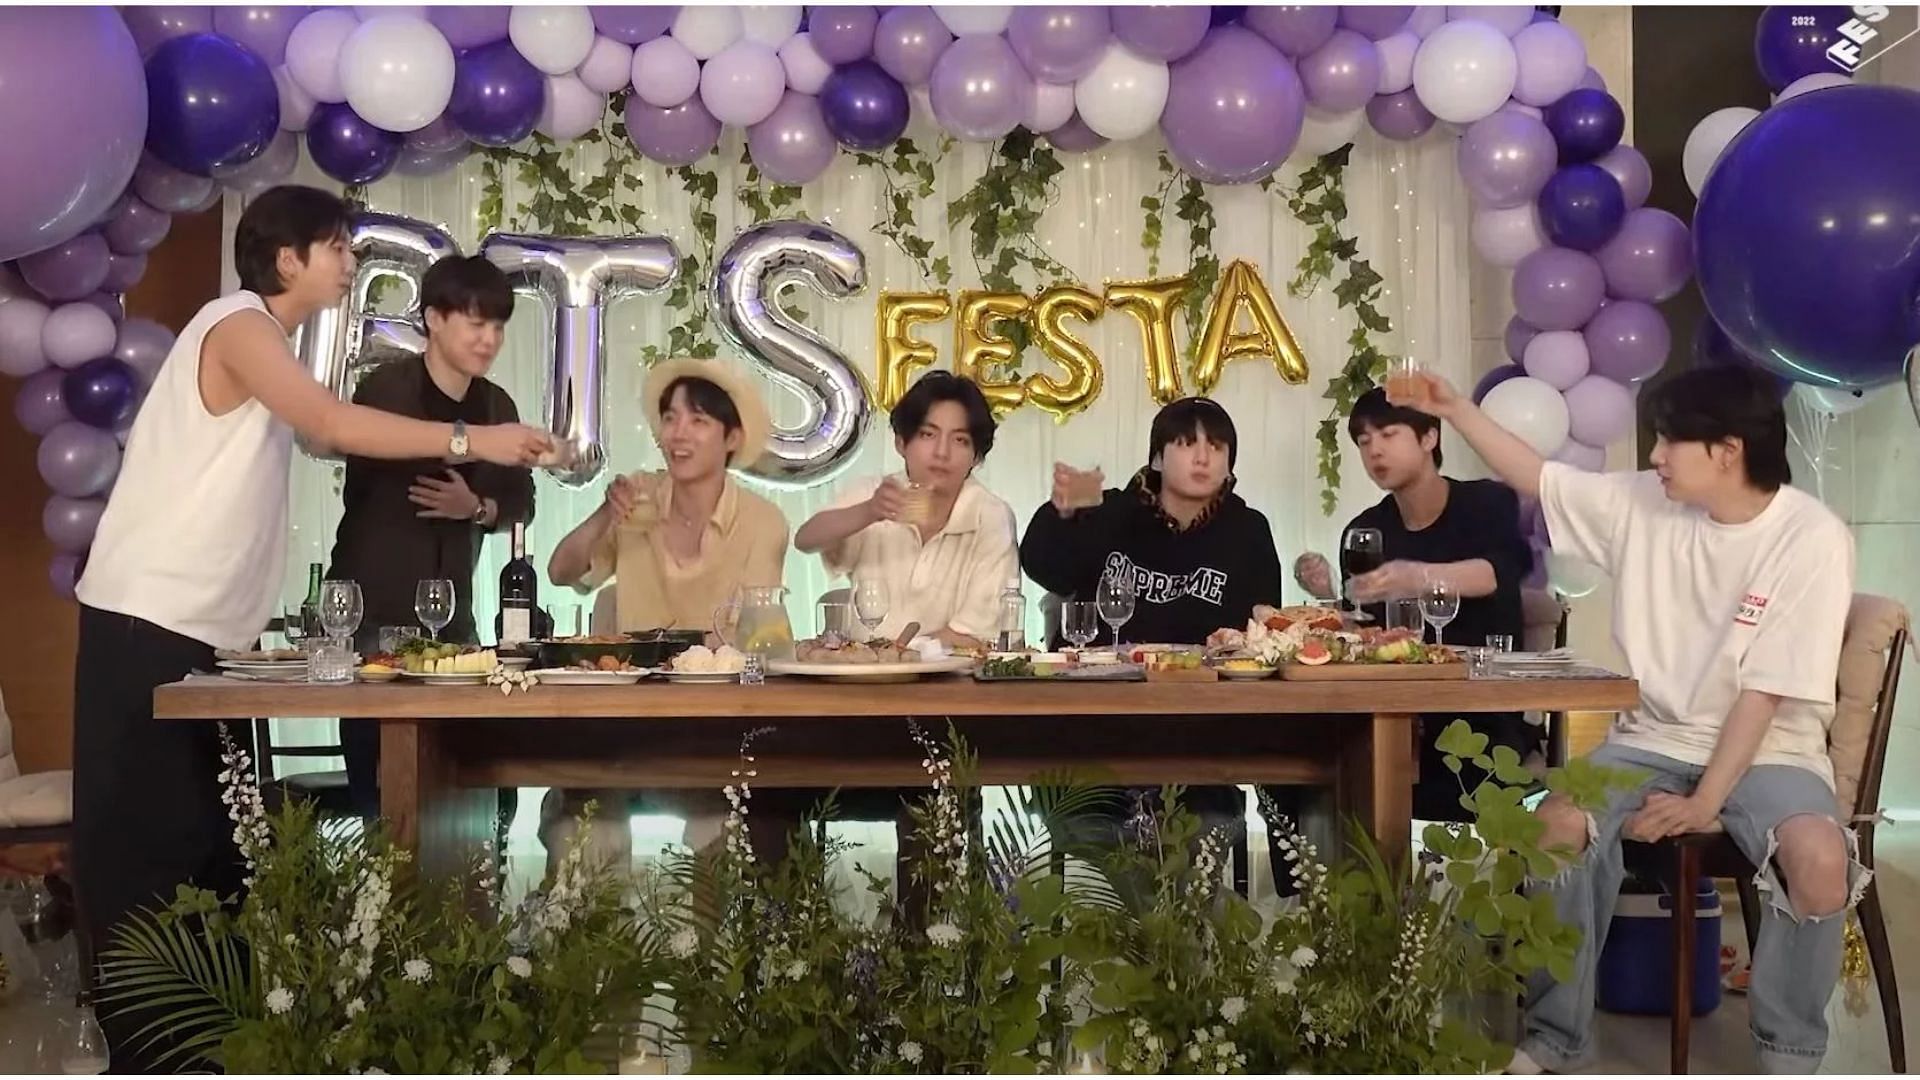 BTS during Festa dinner party 2022 (Image via BANGTANTV/ YouTube)